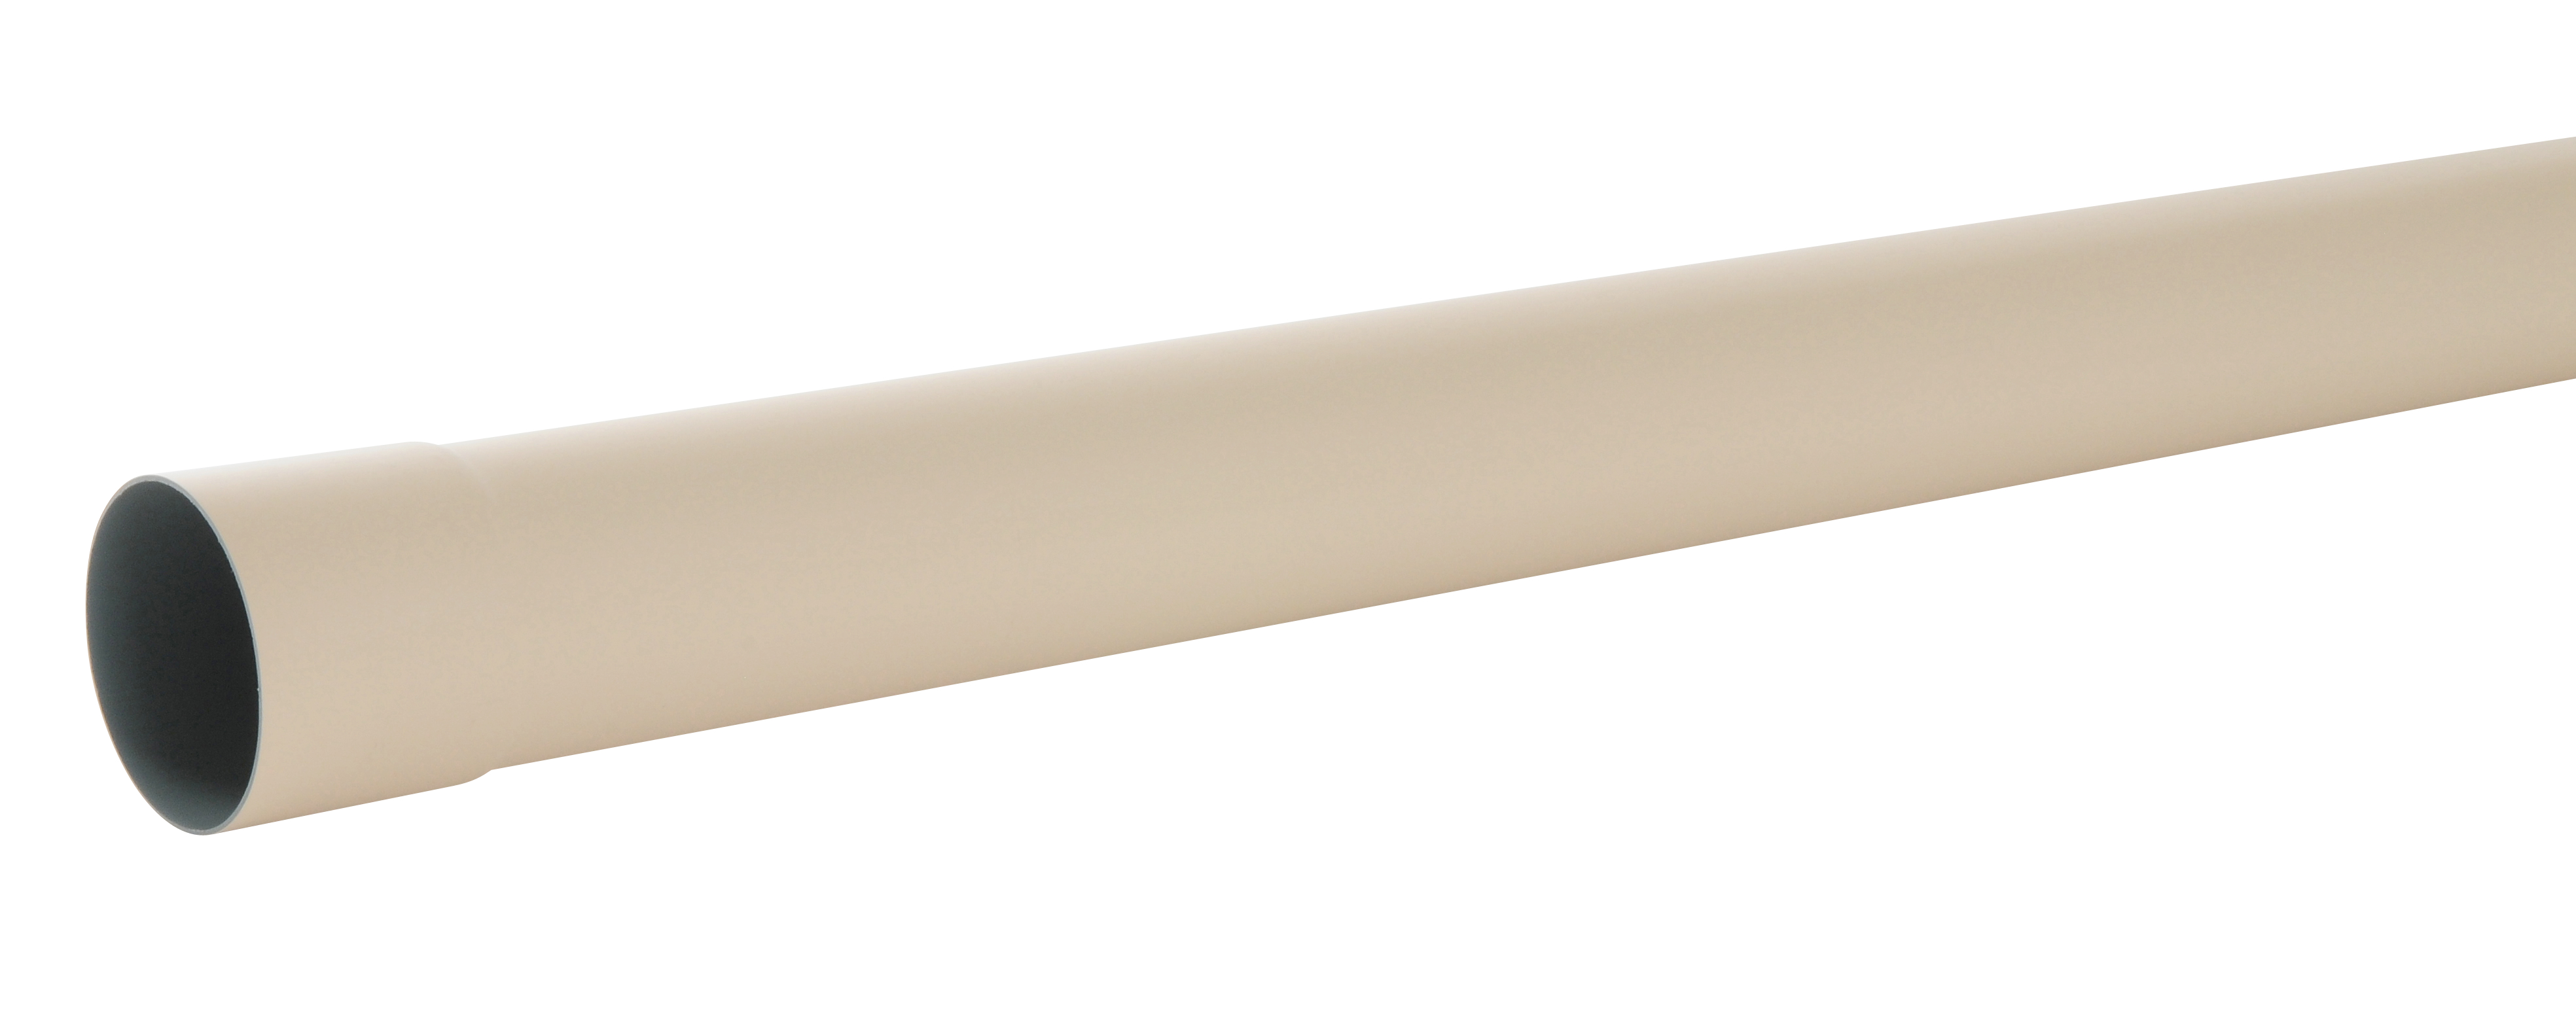 Tube de descente PVC 4m sable développé 25cm TDL80S - GIRPI